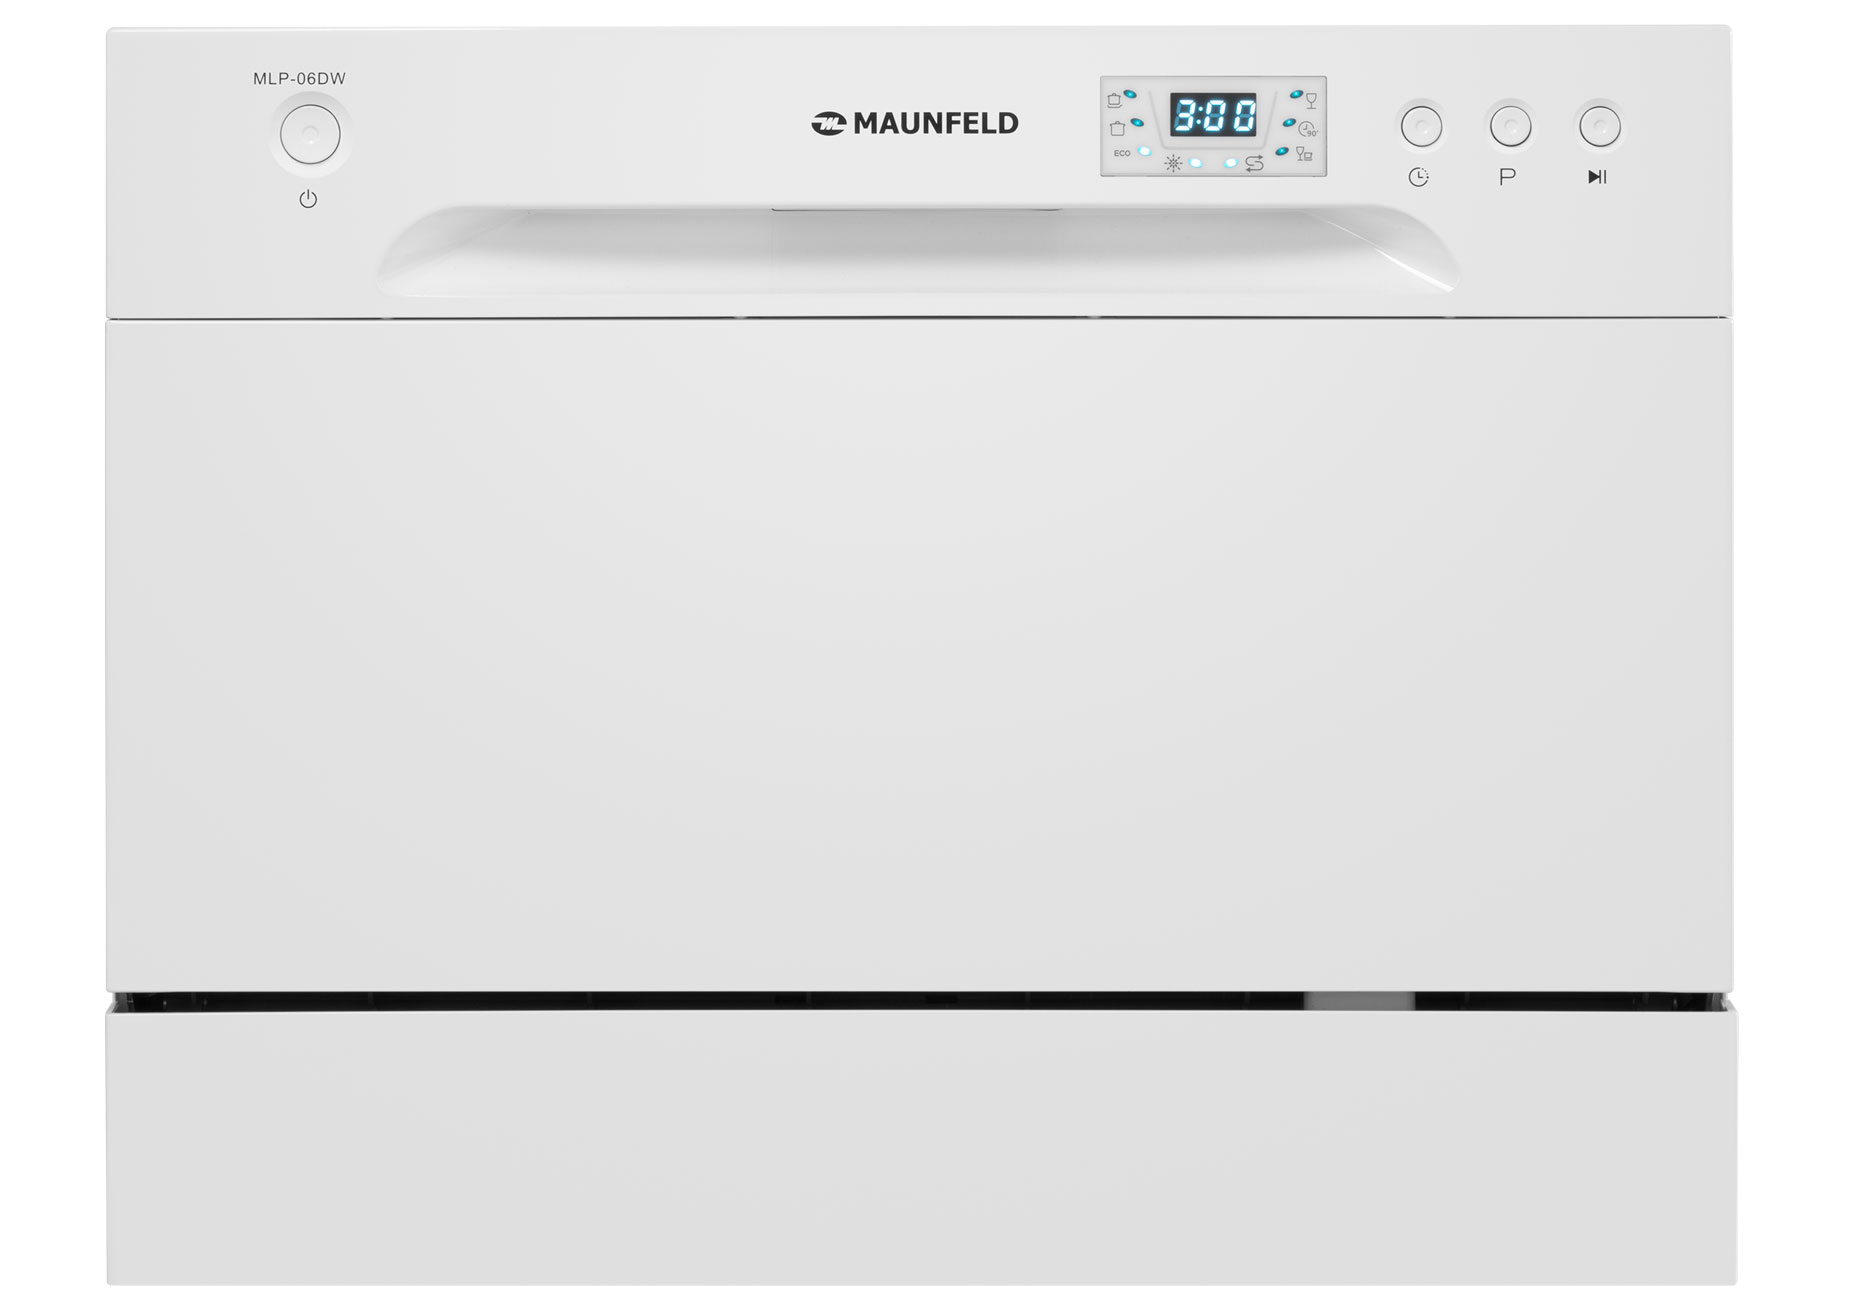 Посудомоечная машина MAUNFELD MLP-06DW белый встраиваемая посудомоечная машина kitll kdi 4501 45см 6 программ нержавеющая сталь